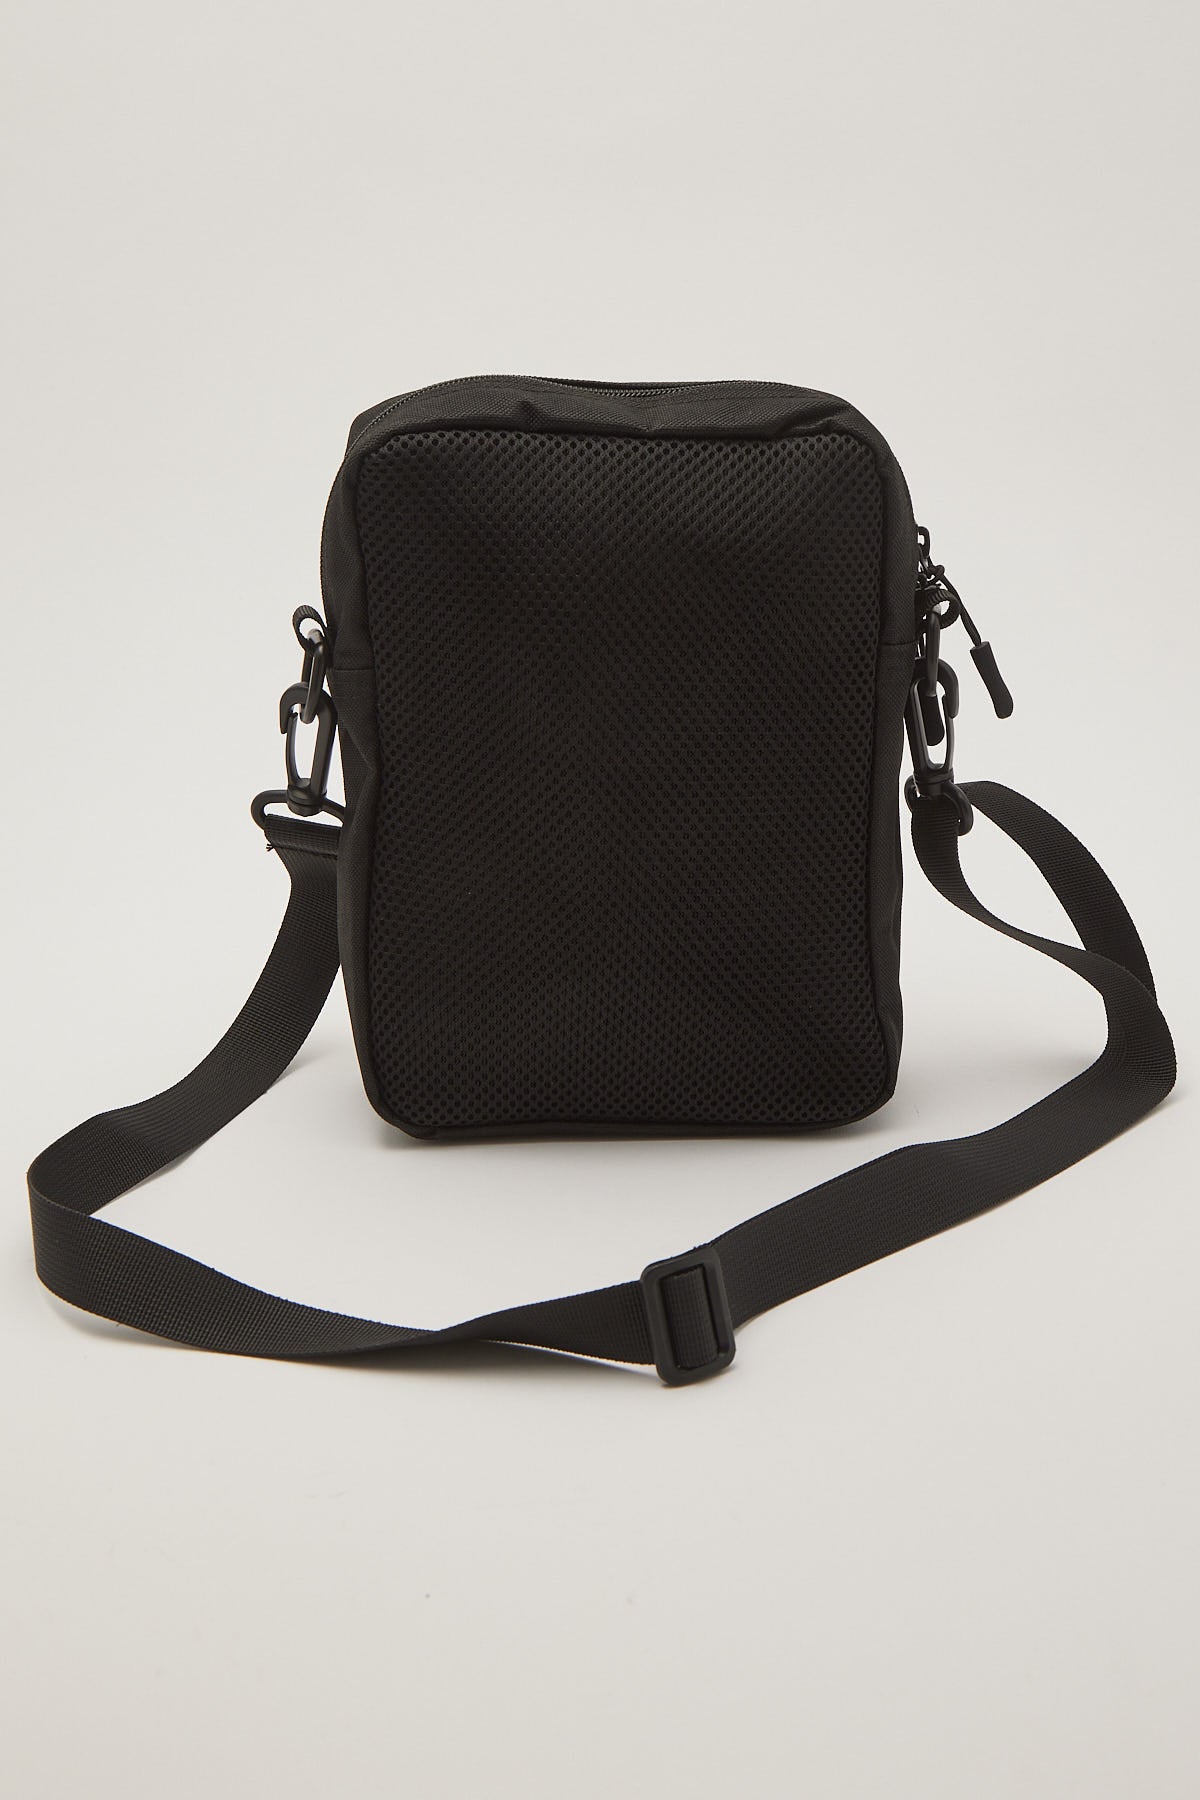 Xlarge Italic Utlity Bag Black